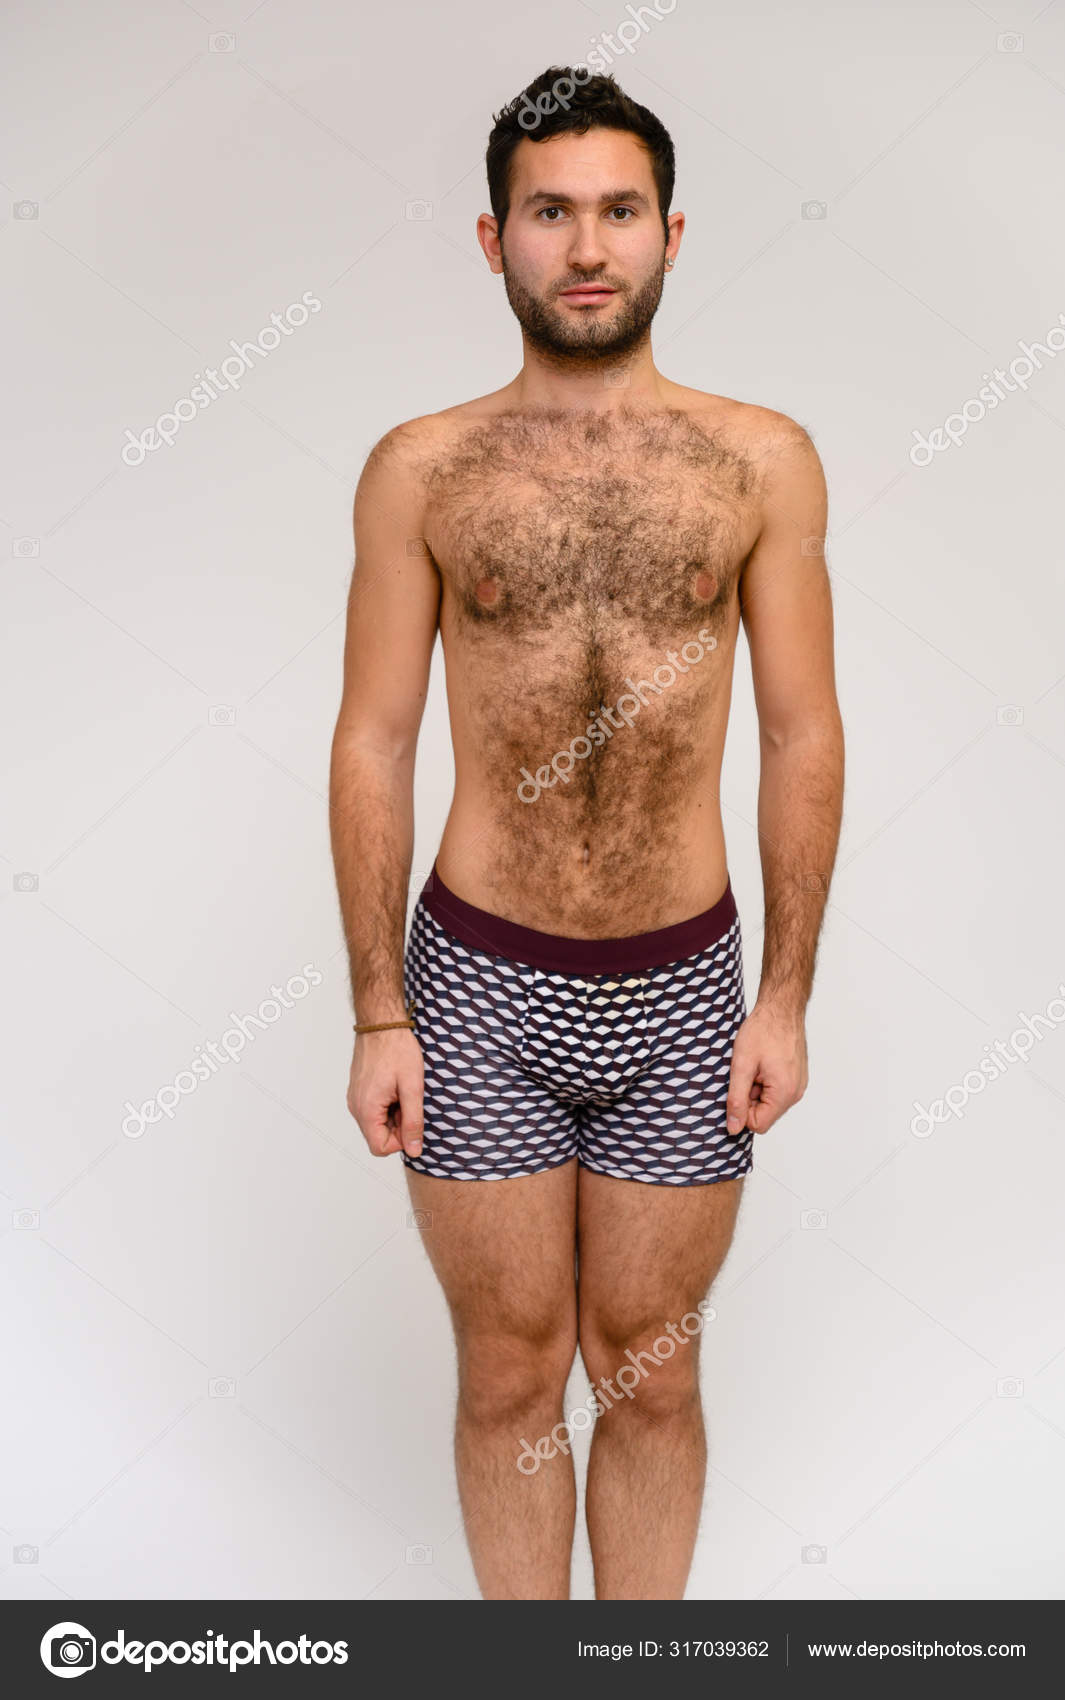 Black Nude Male Model